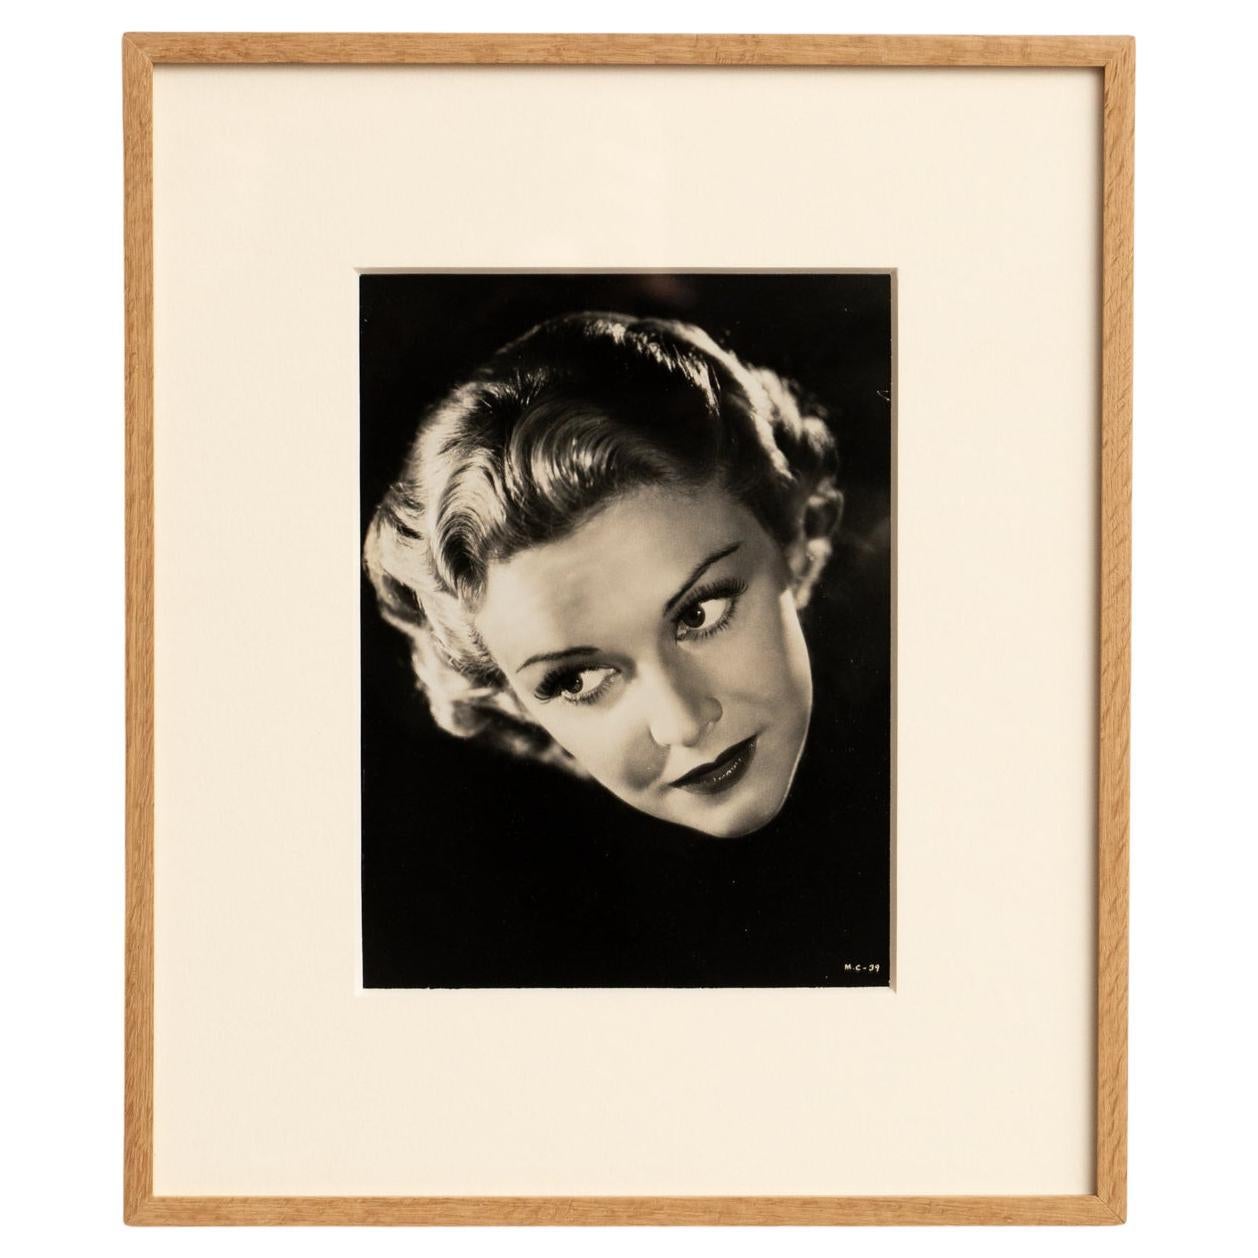 Gerahmte Porträtfotografie in Schwarz-Weiß von Madeline Carroll, ca. 1938